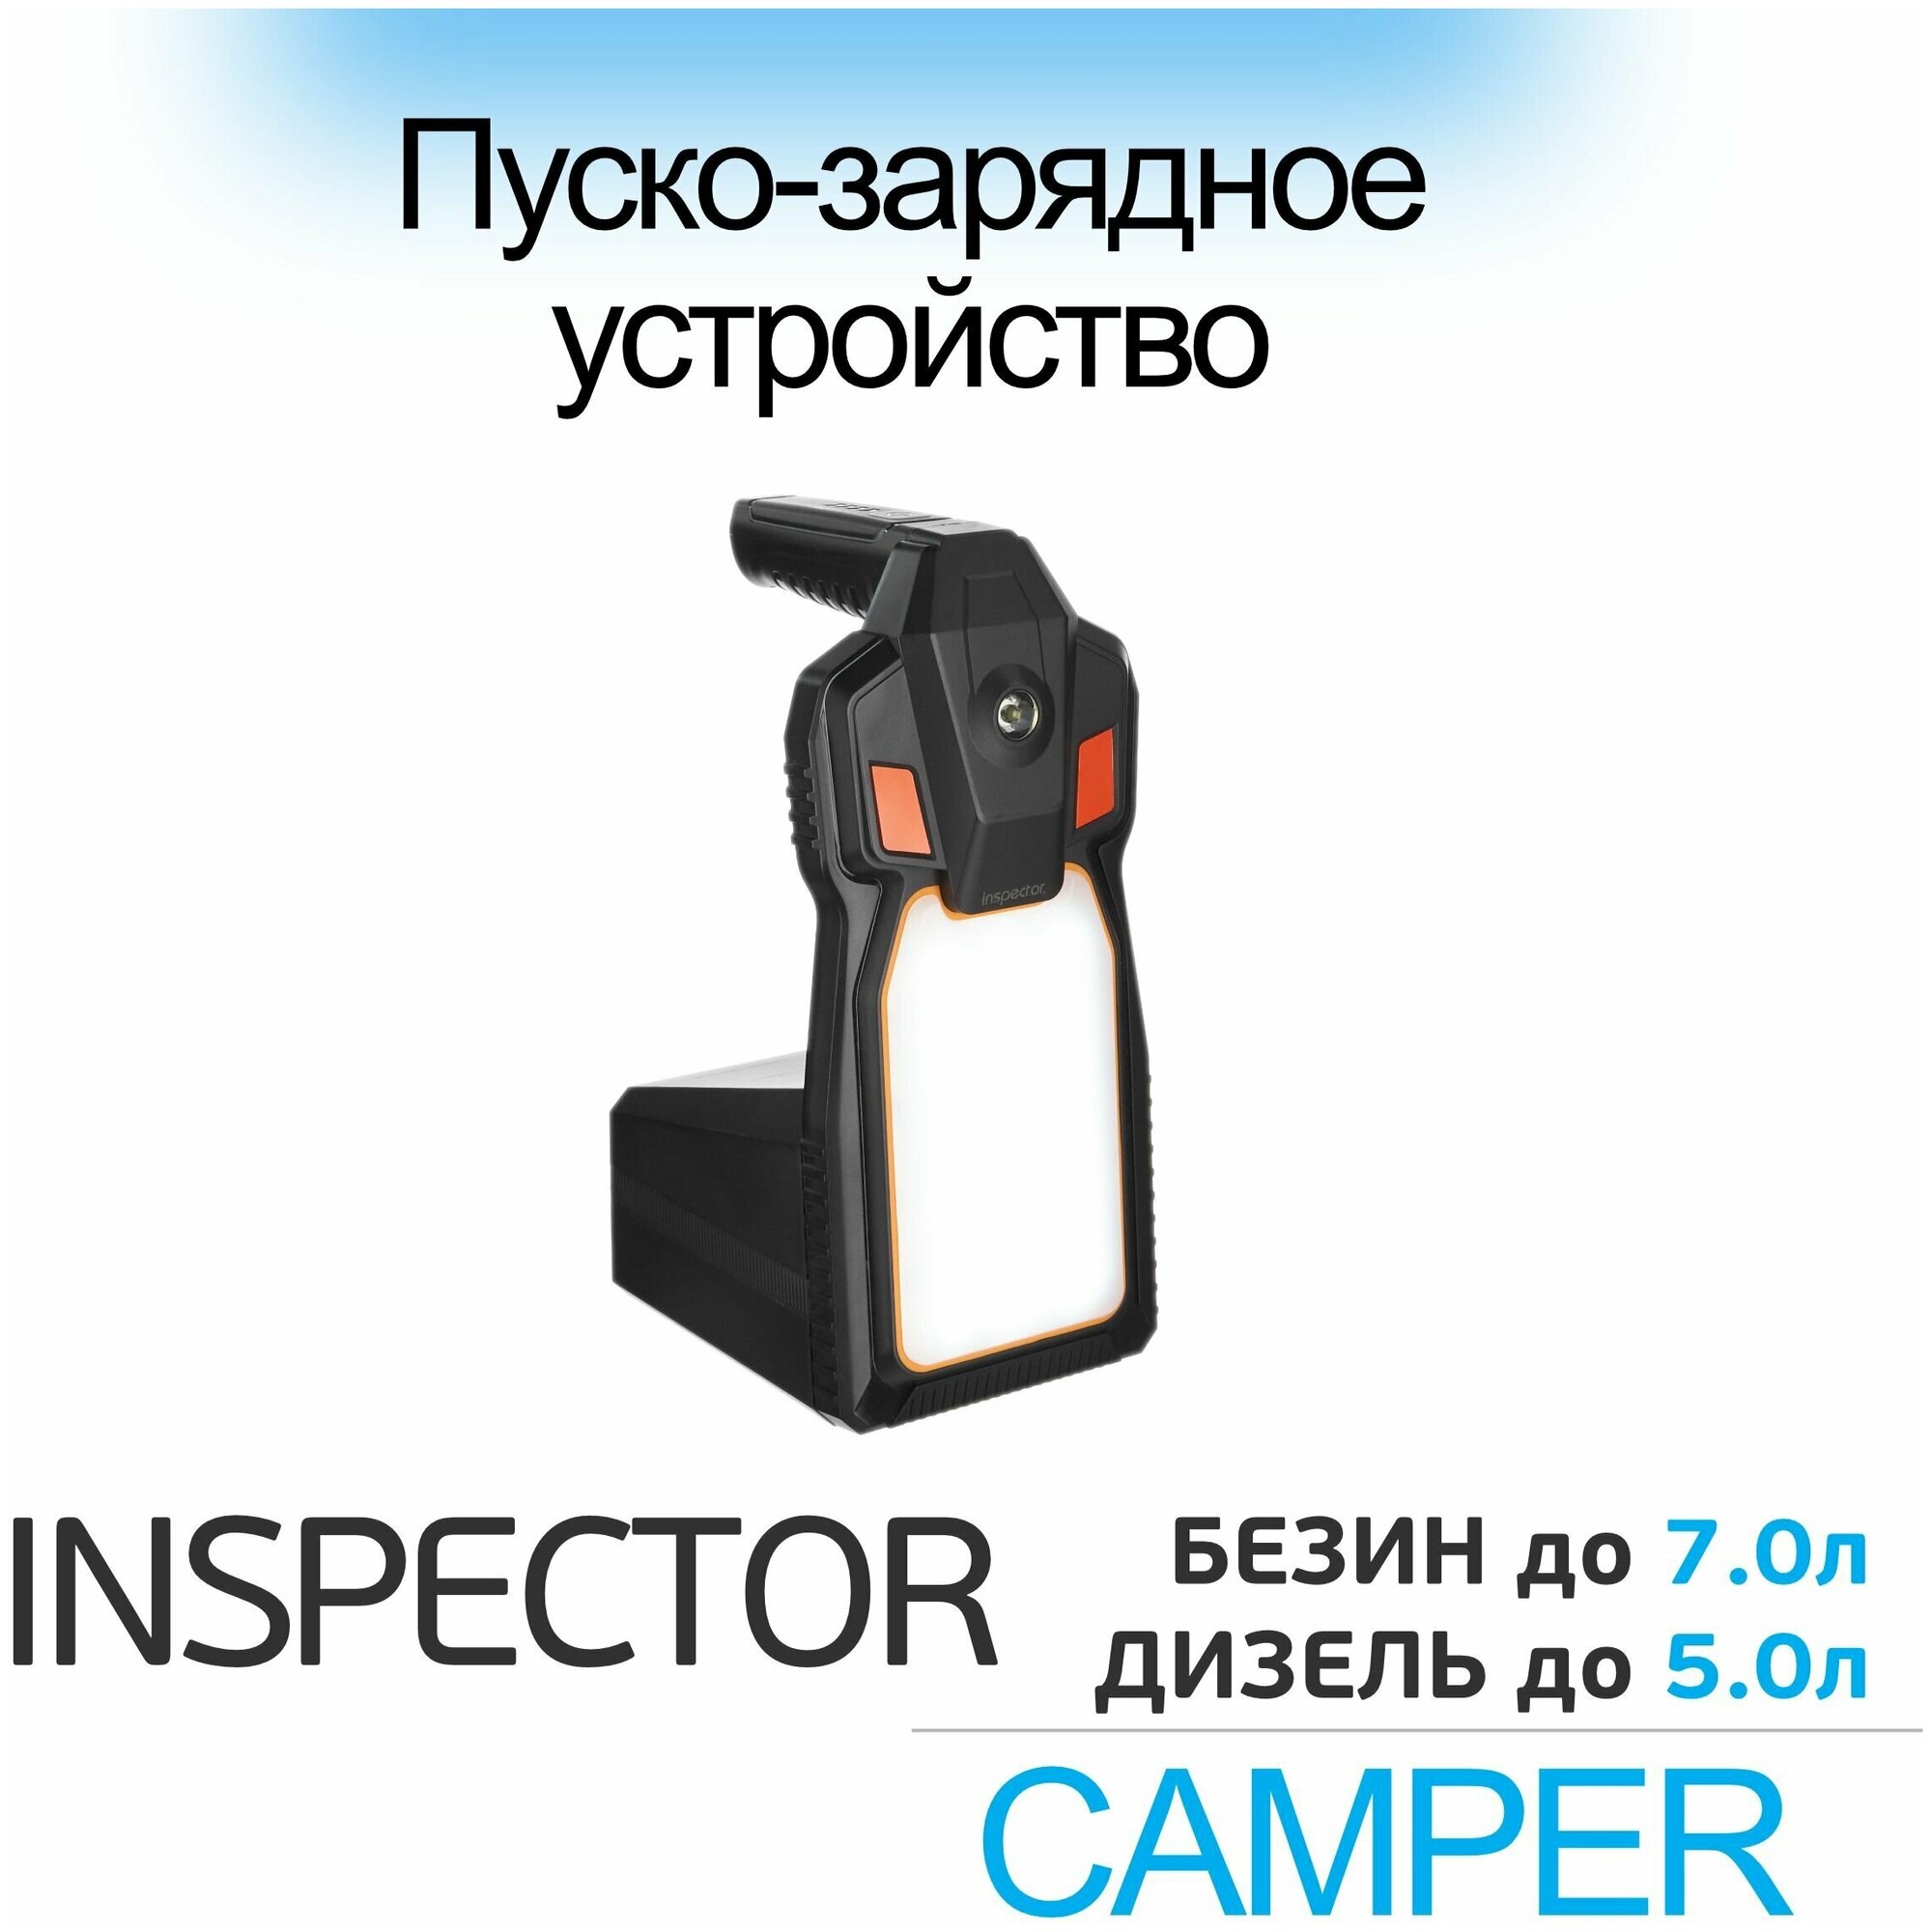 Пуско-зарядное устройство Inspector Camper - фото №8